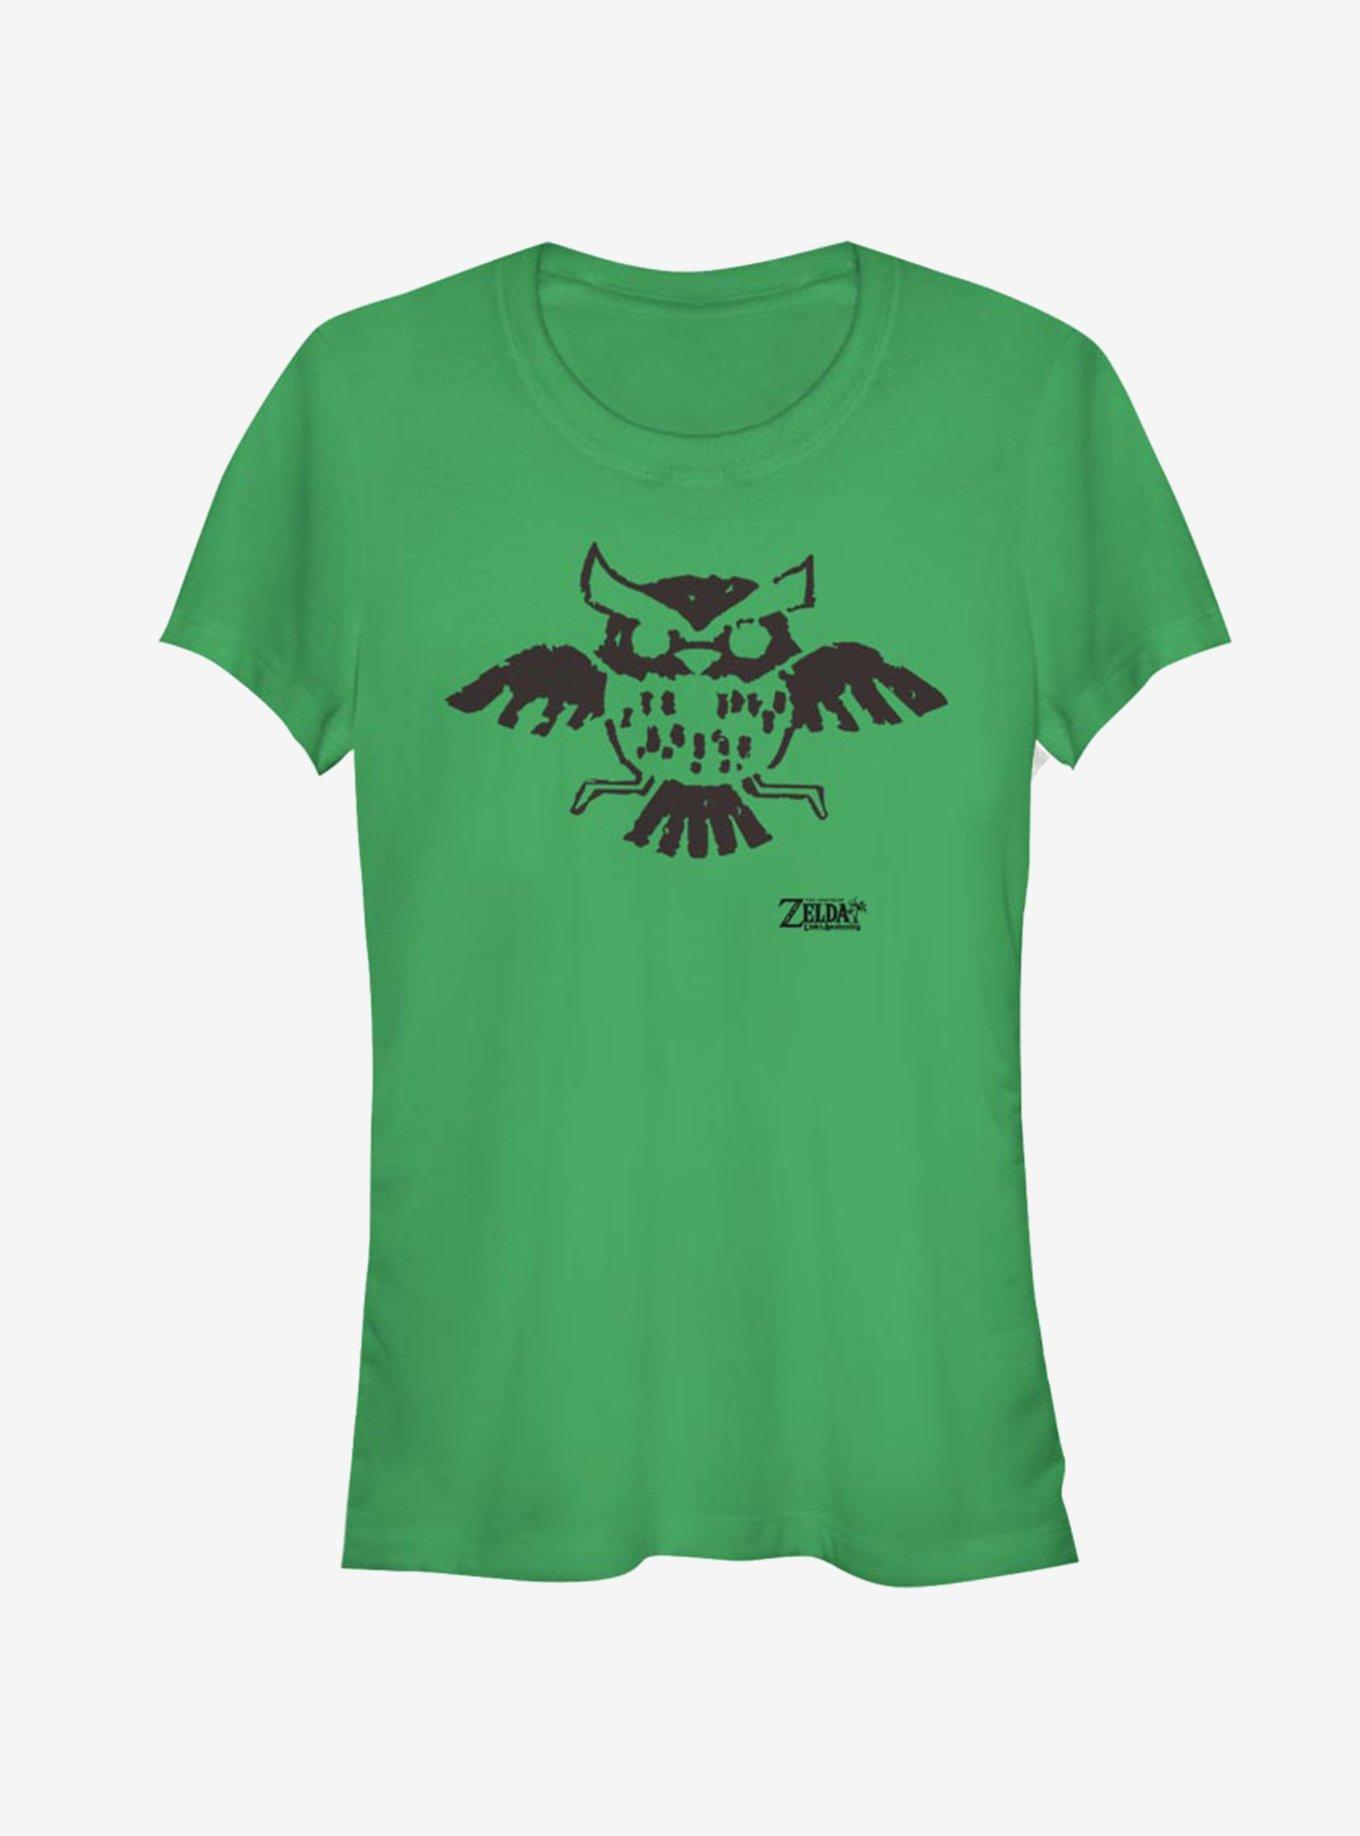 Nintendo The Legend of Zelda: Link's Awakening Owl Glyph Girls T-Shirt, KELLY, hi-res